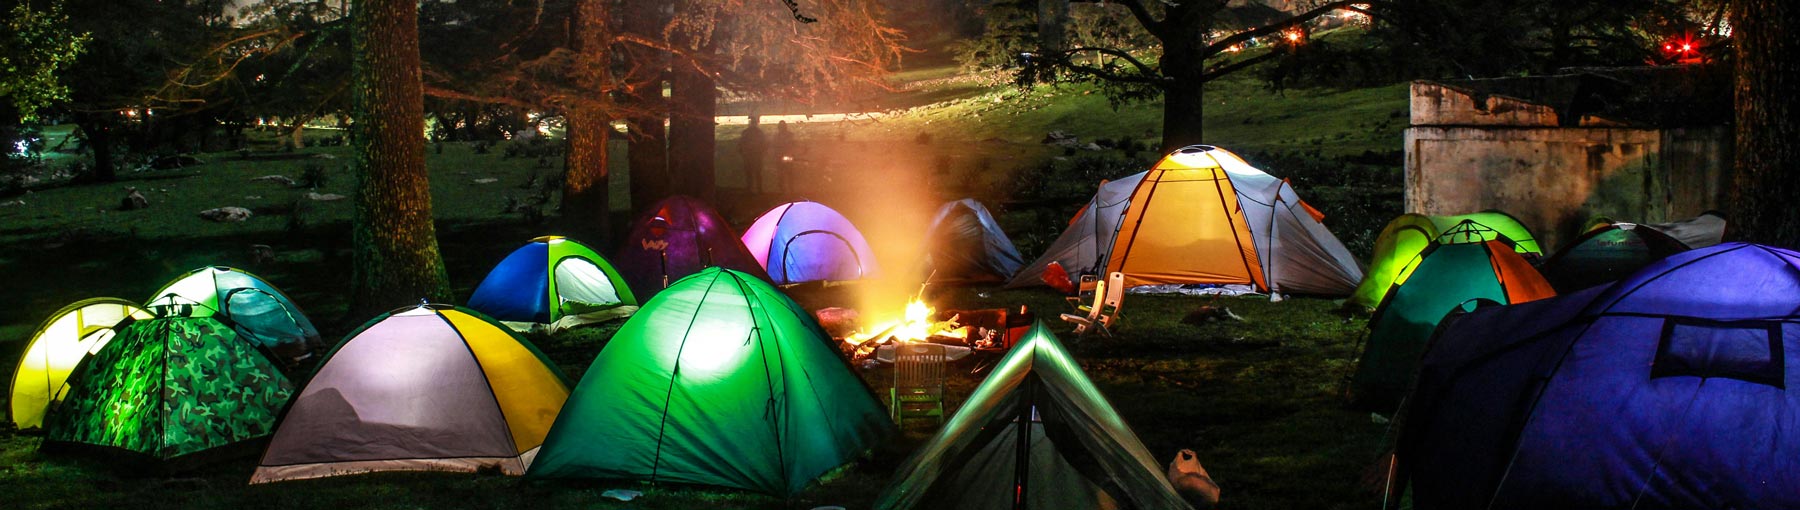 Camping Liten